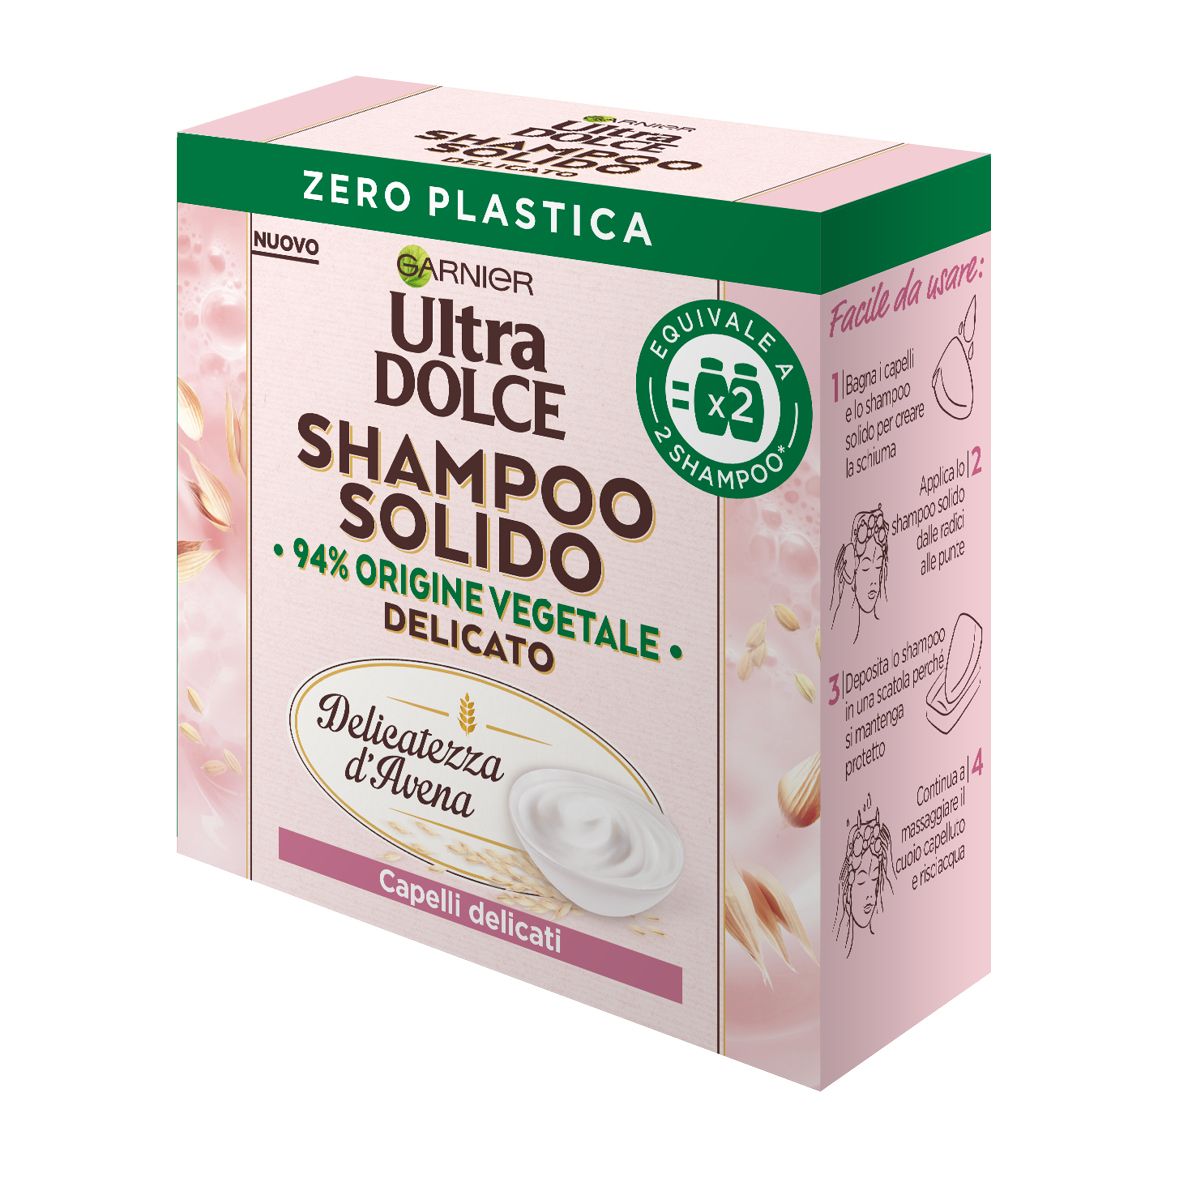 Garnier Ultra Dolce Shampoo Solido Delicatezza Avena Capelli Delicati 60gr